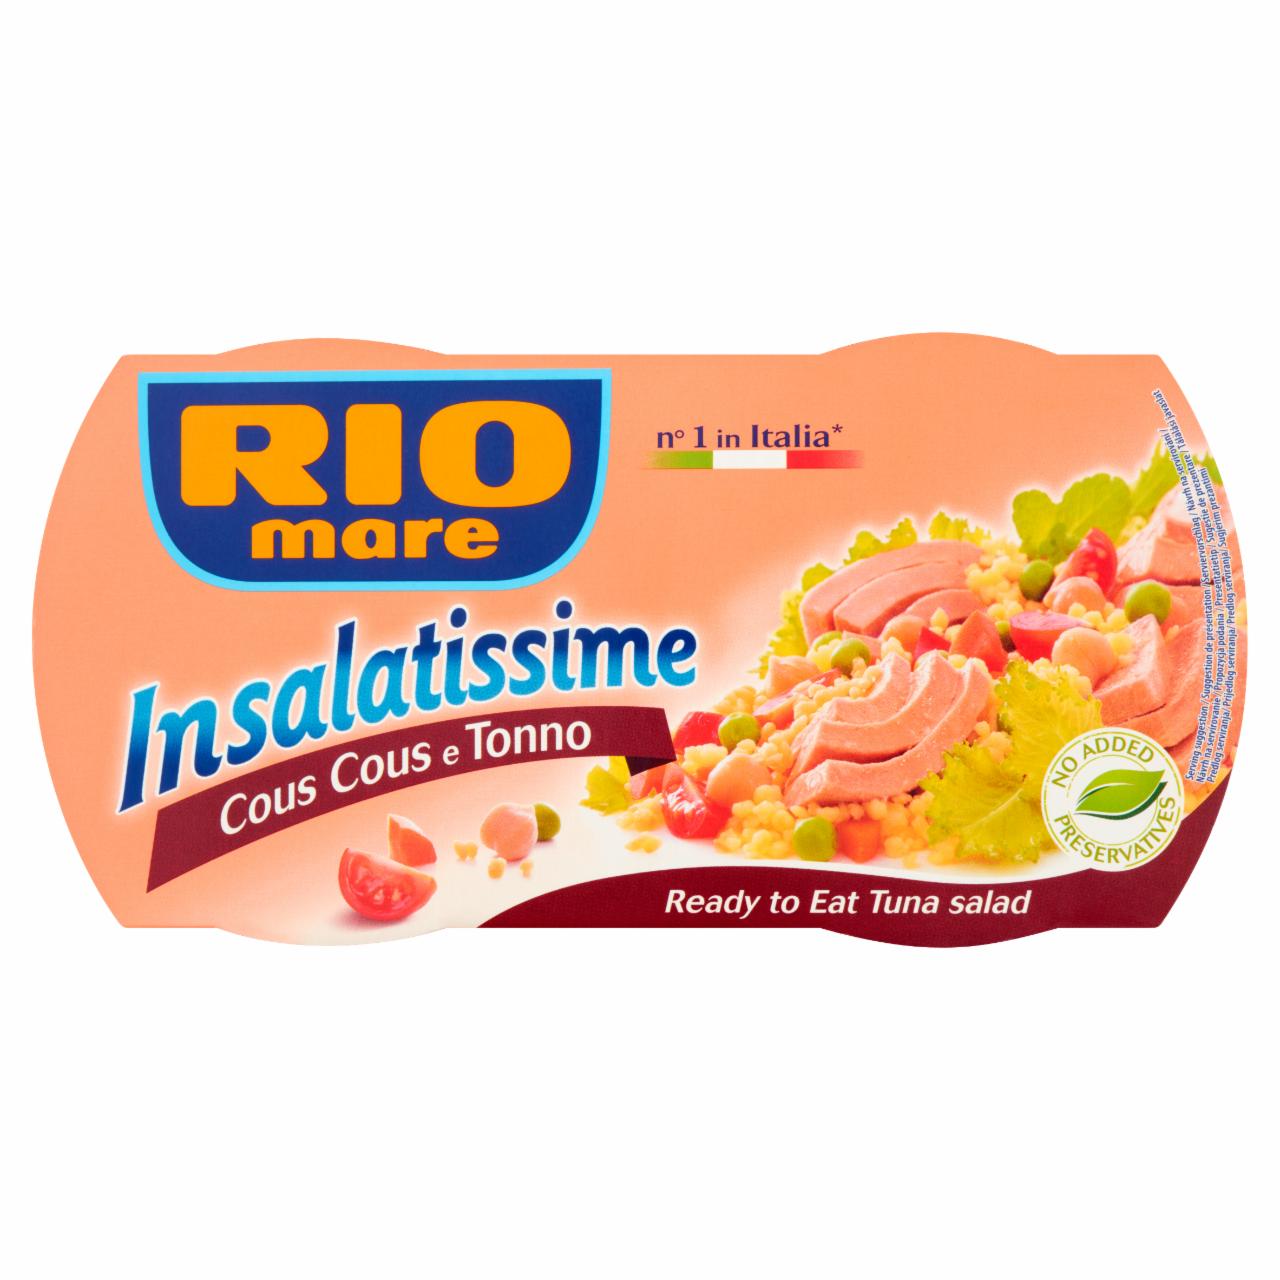 Zdjęcia - Rio Mare Insalatissime Cous Cous e Tonno Gotowe danie z kuskus warzyw i tuńczyka 2 x 160 g